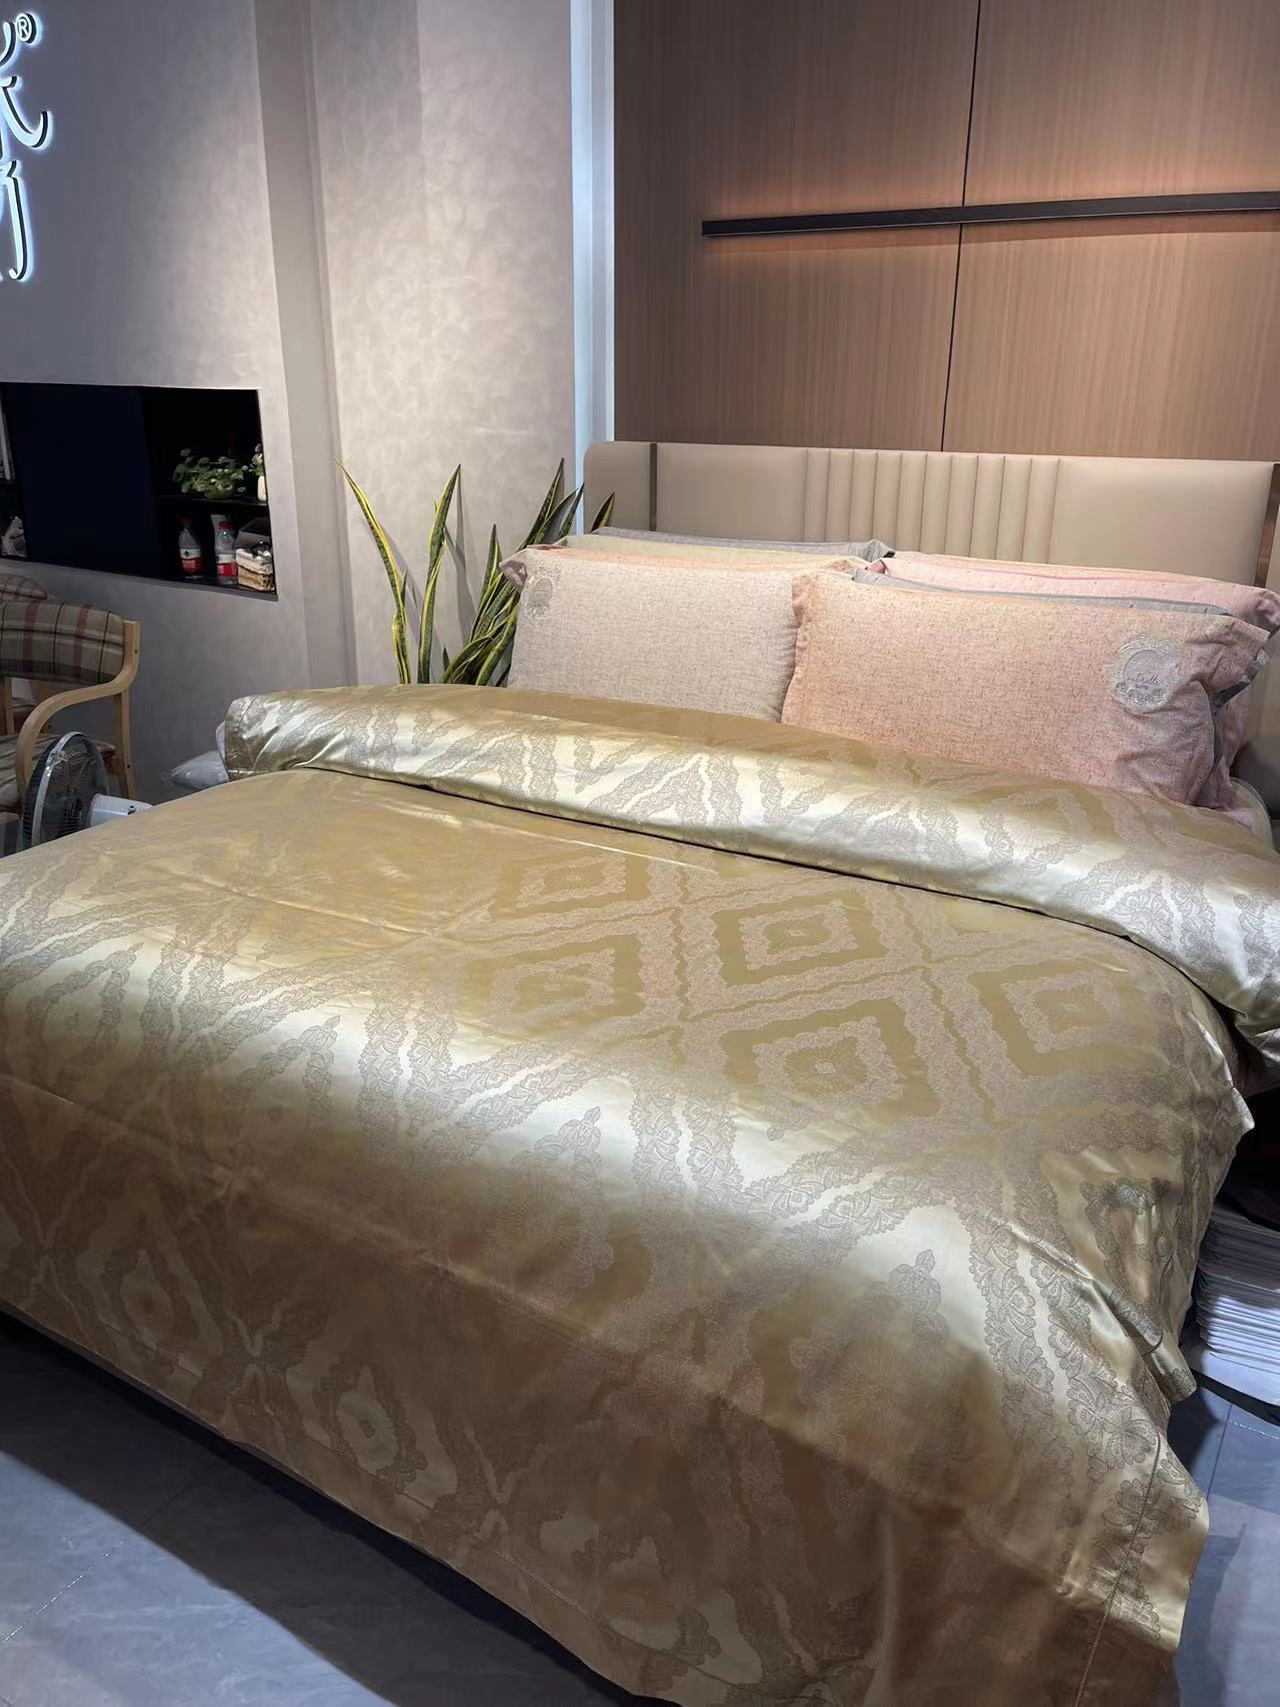 four-piece-bedding-sethigh-end-zen-silk-golden-years2021-b013806